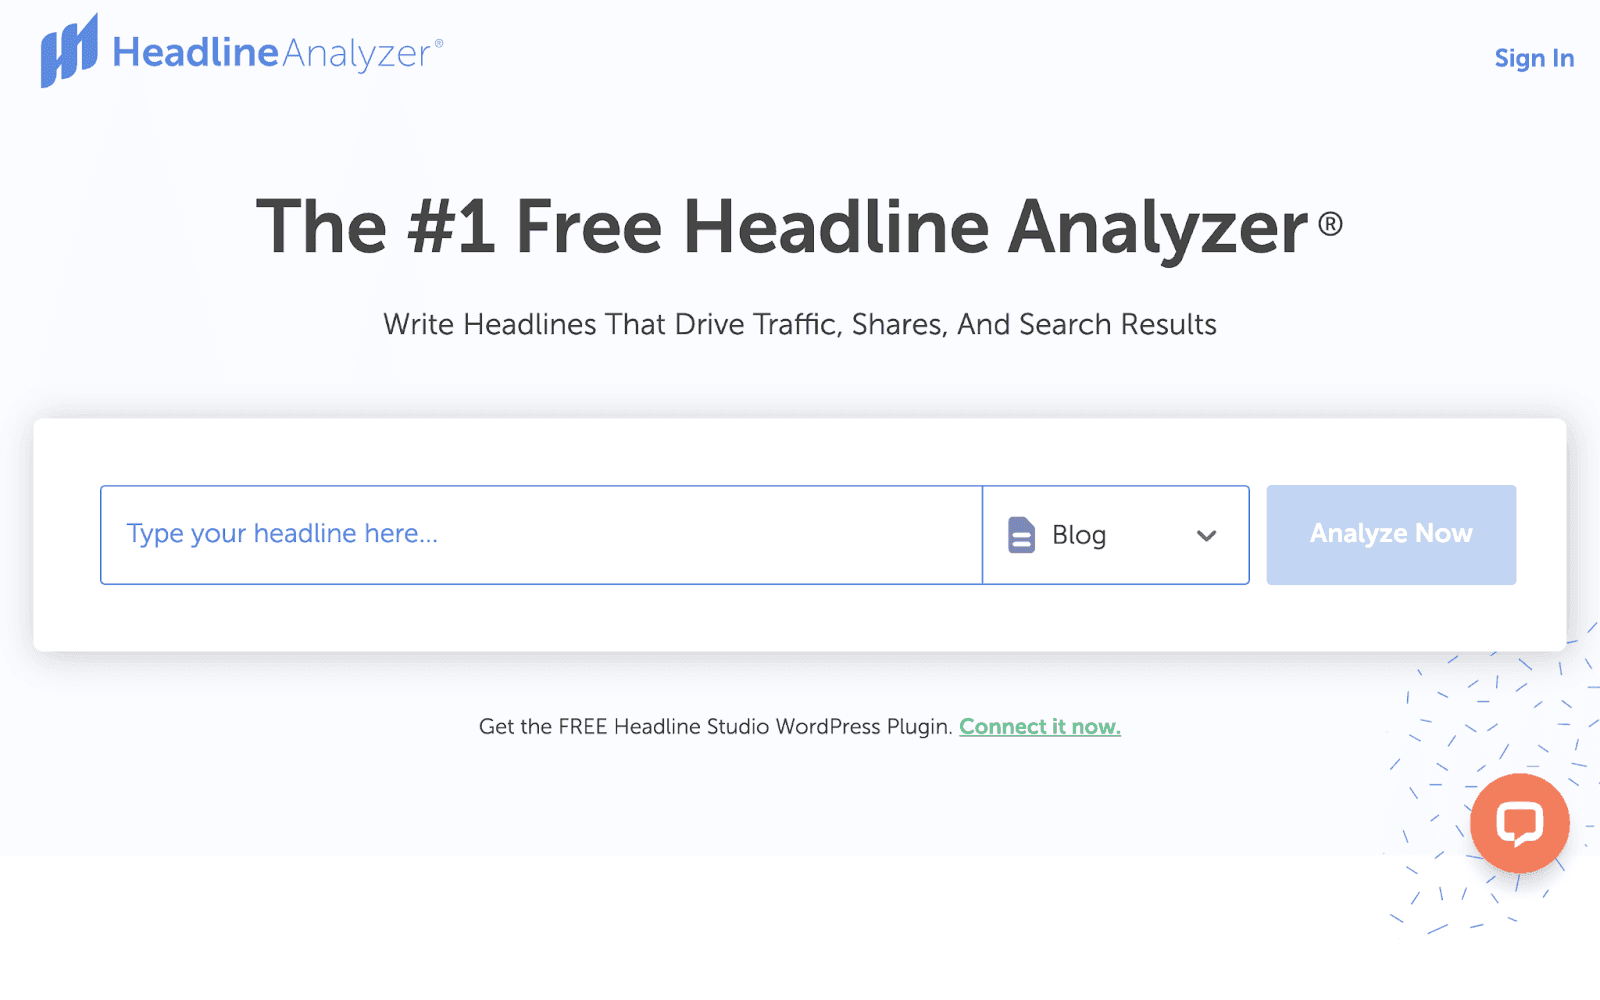 The #1 free headline analyzer